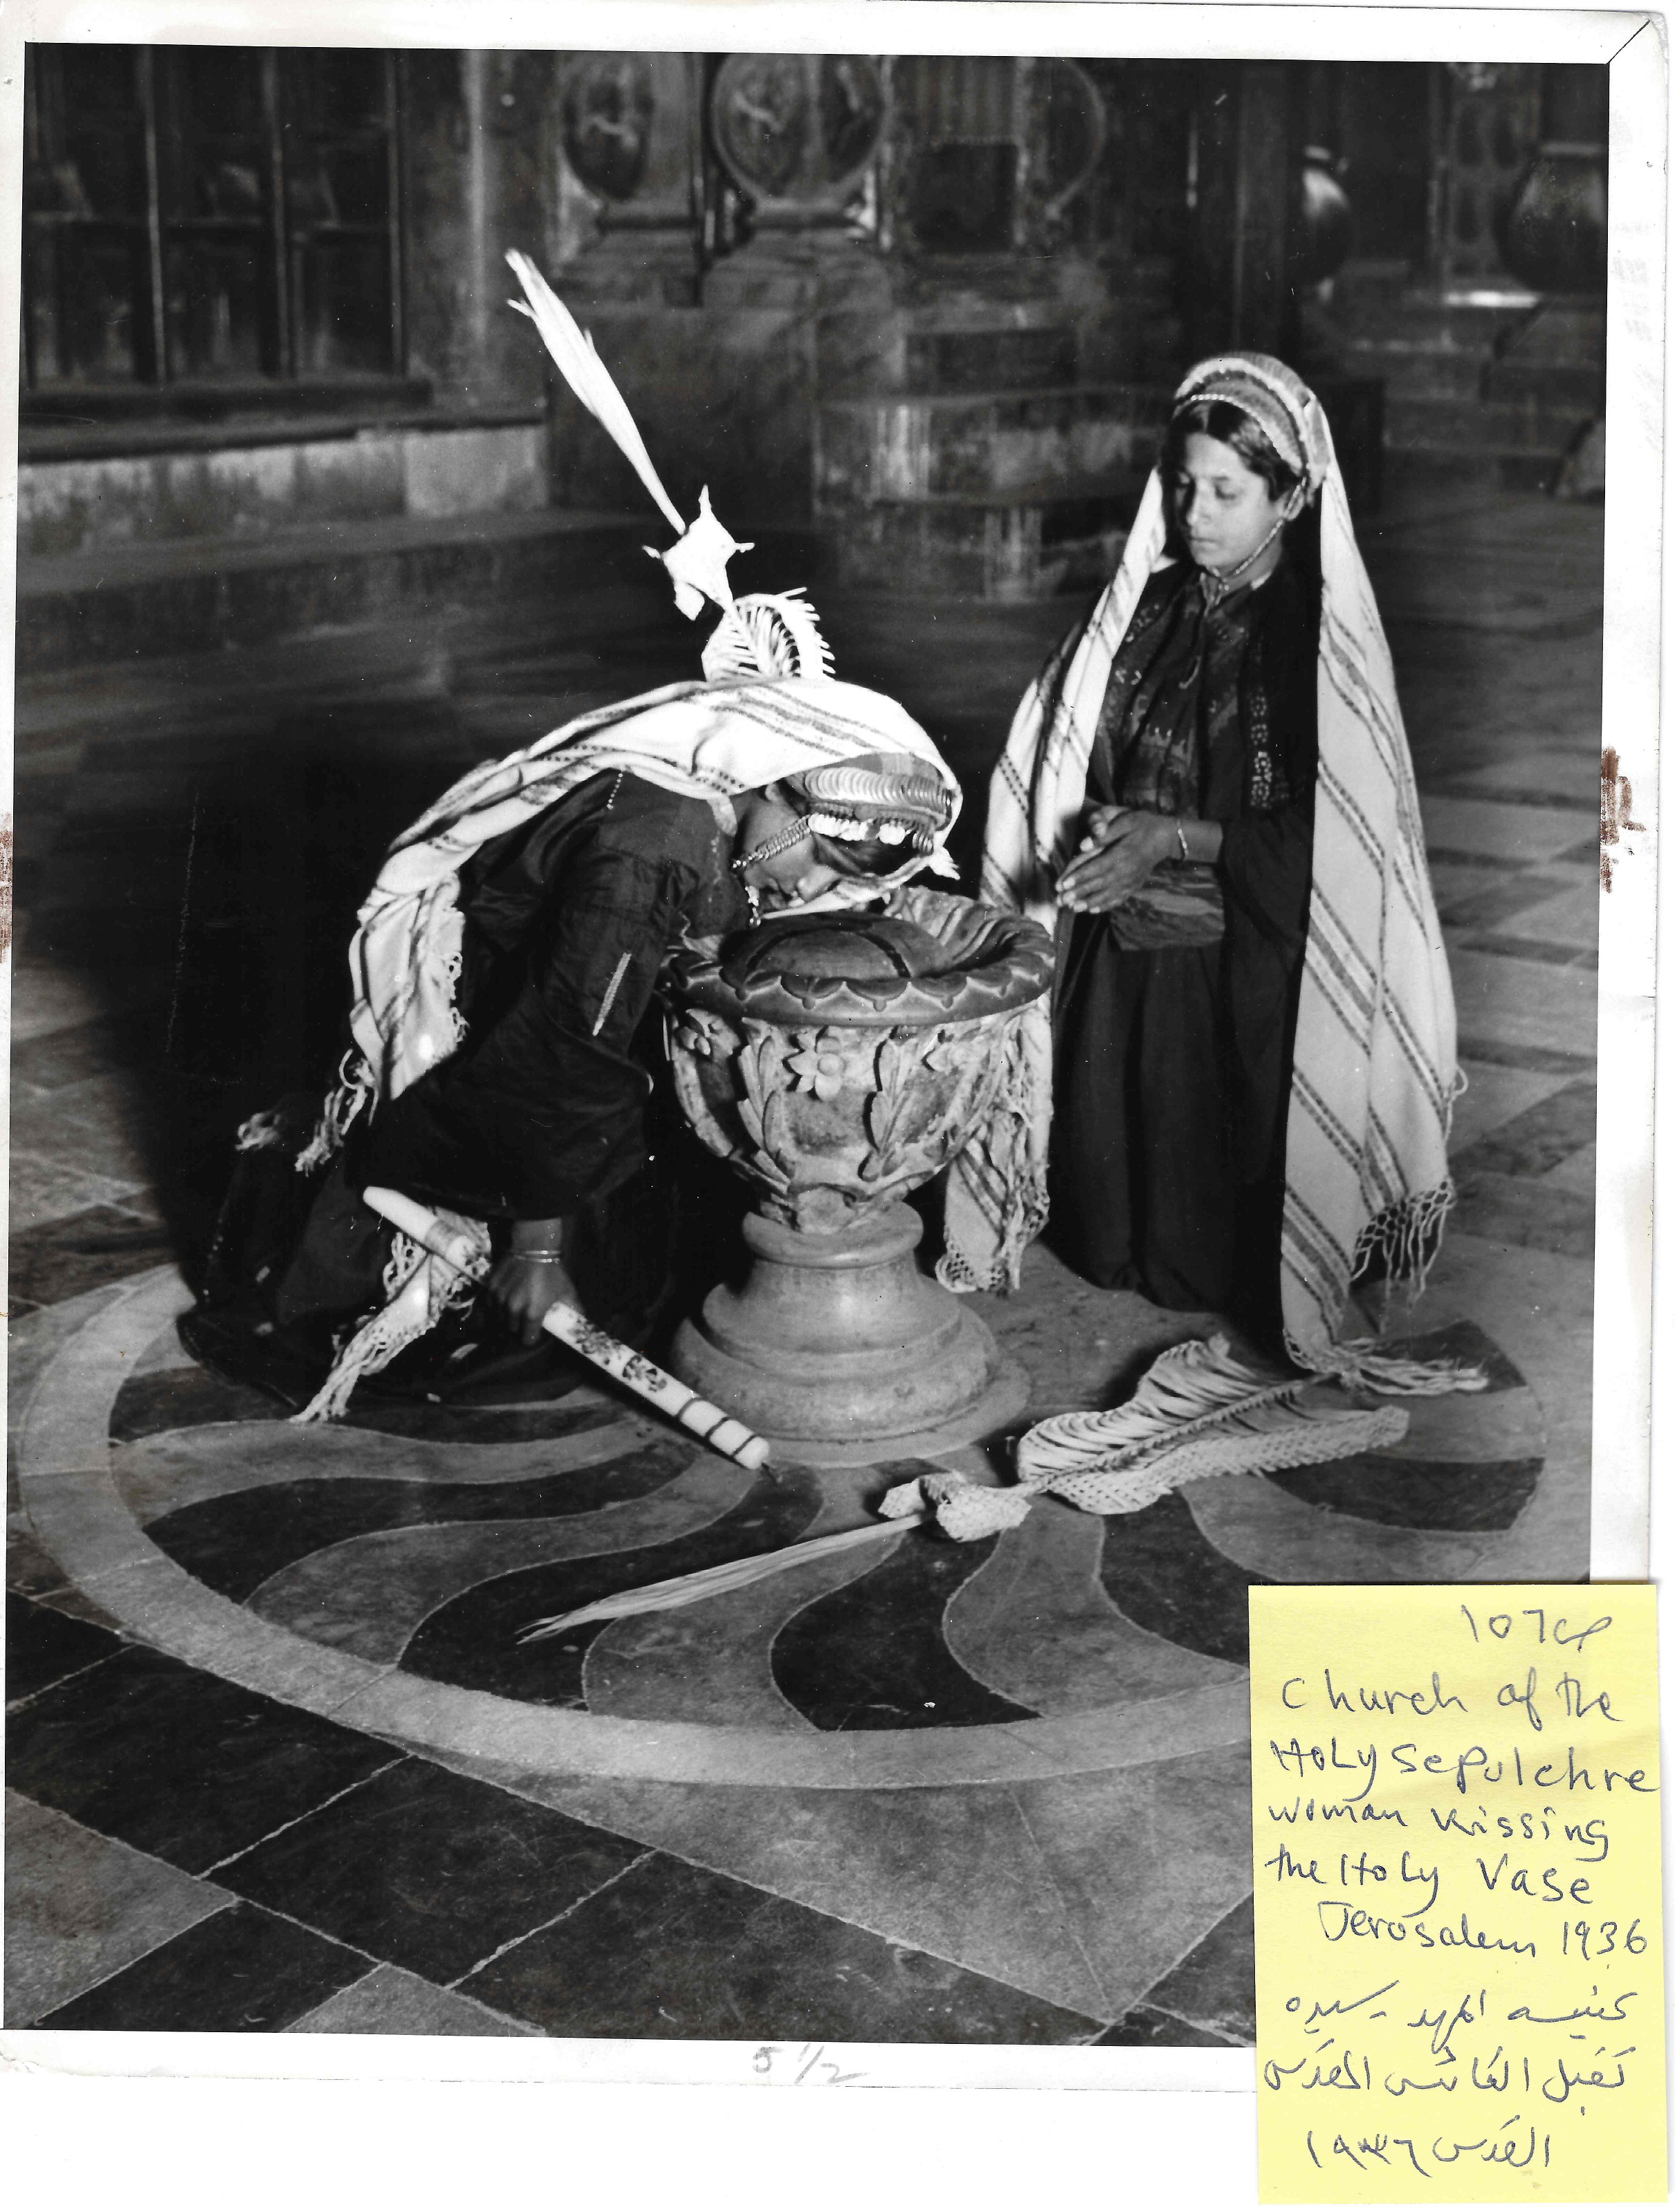  المهد - سيدة تقبل الكأس المقدس عام 1936.jpg